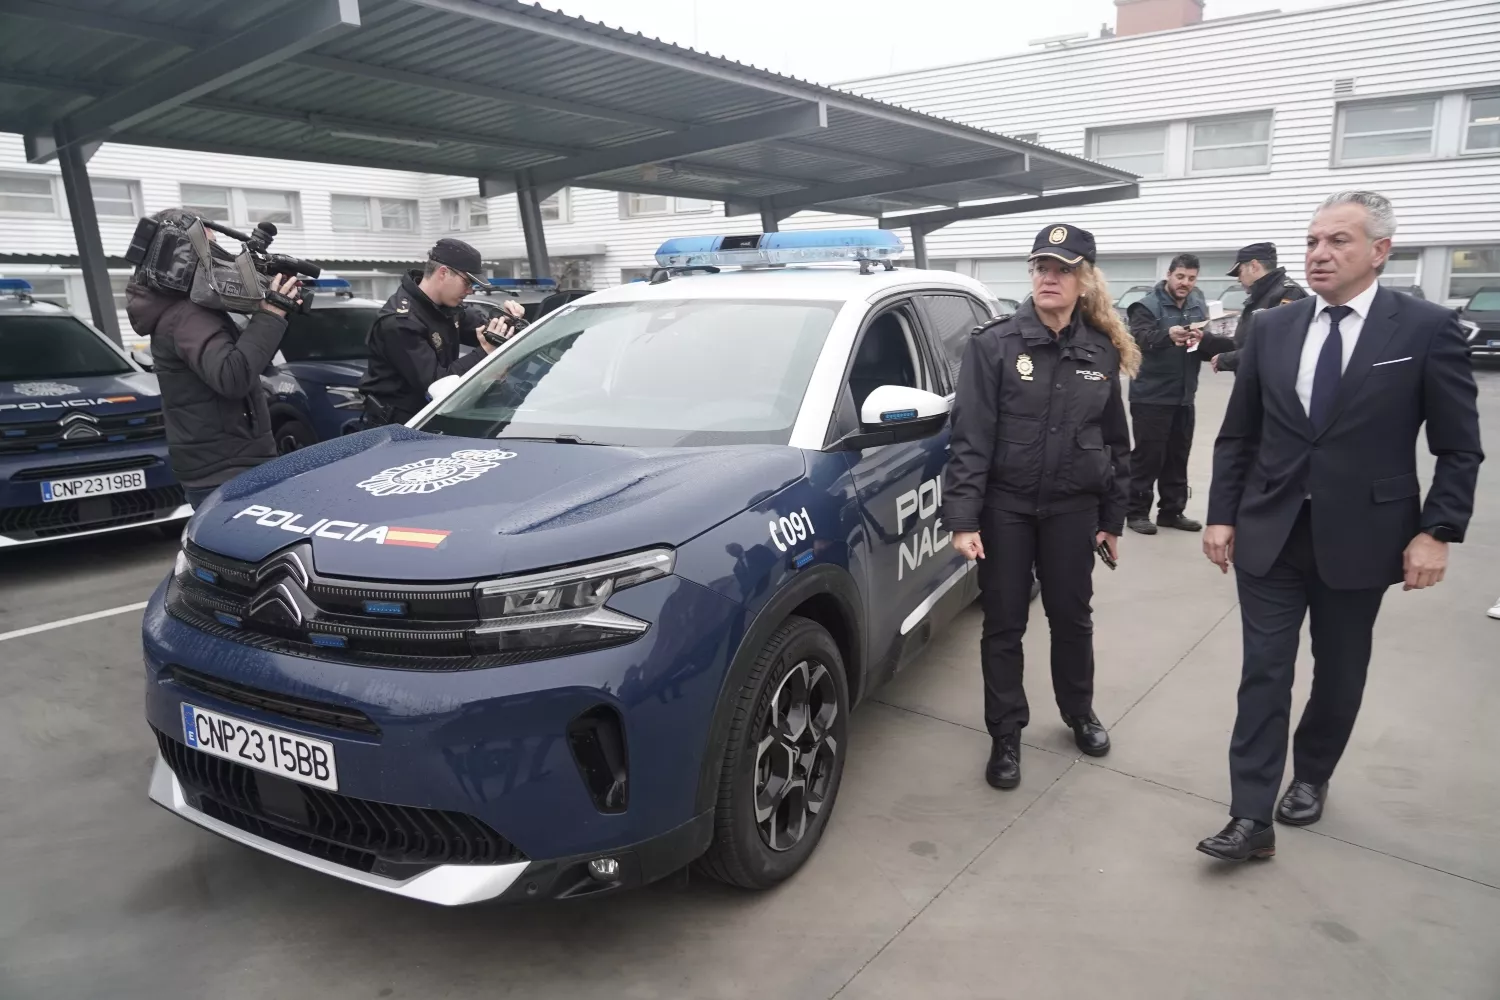  Nicanor Sen, durante la presentación de la nueva flota de vehículos de la Policía Nacional en Castilla y León 